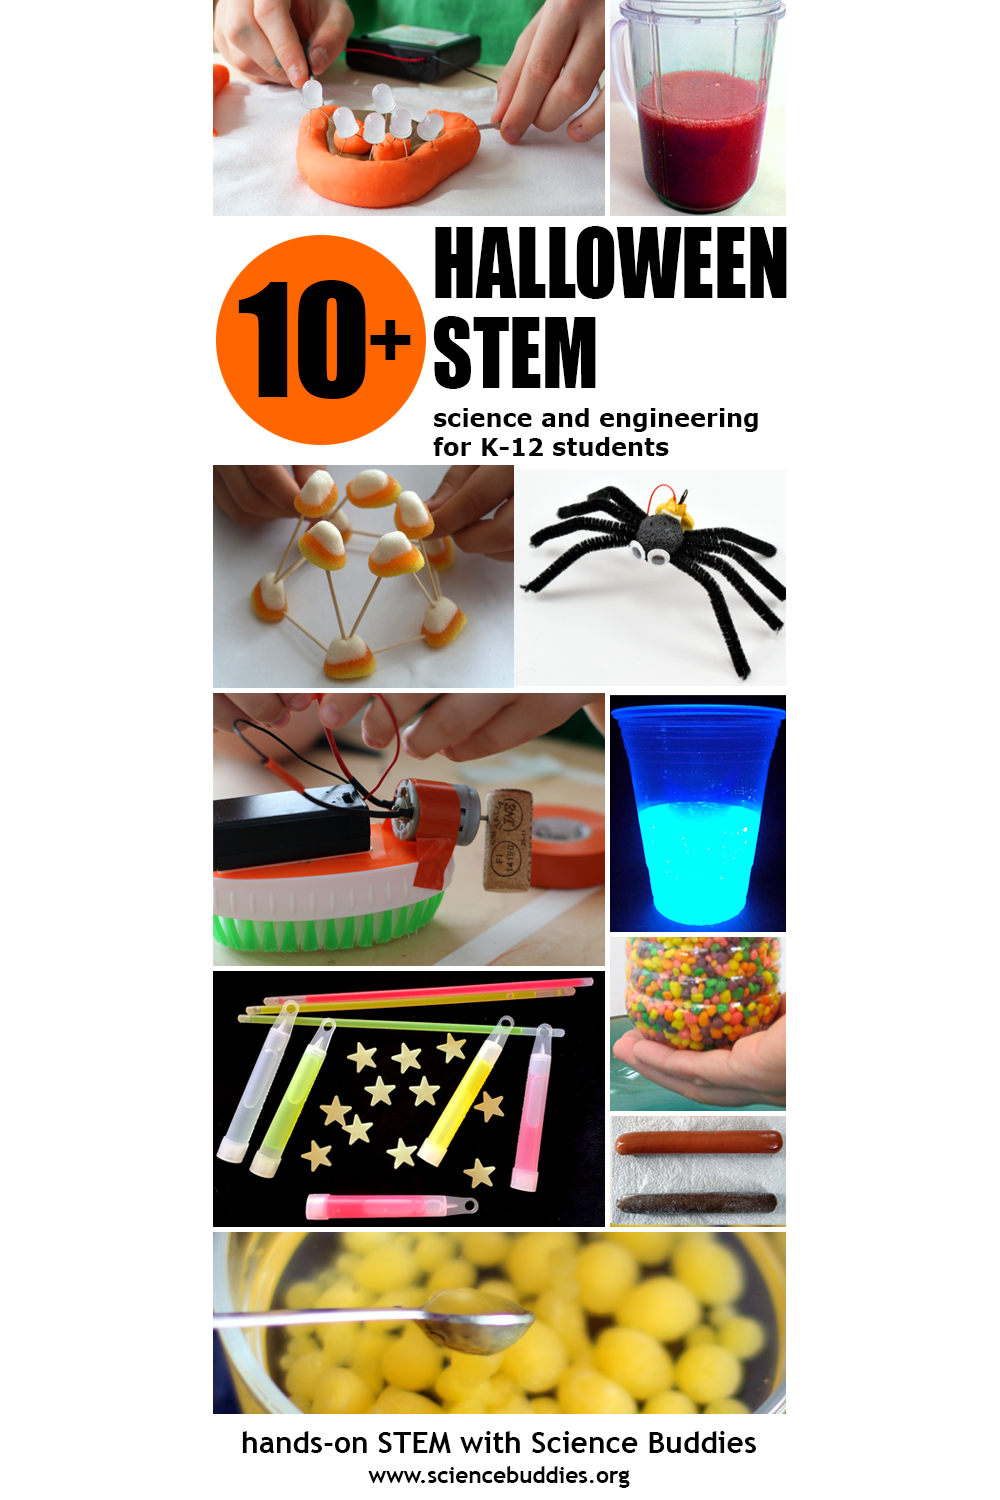 Spooktacular Halloween Science / Hands-on Halloween STEM Project Roundup